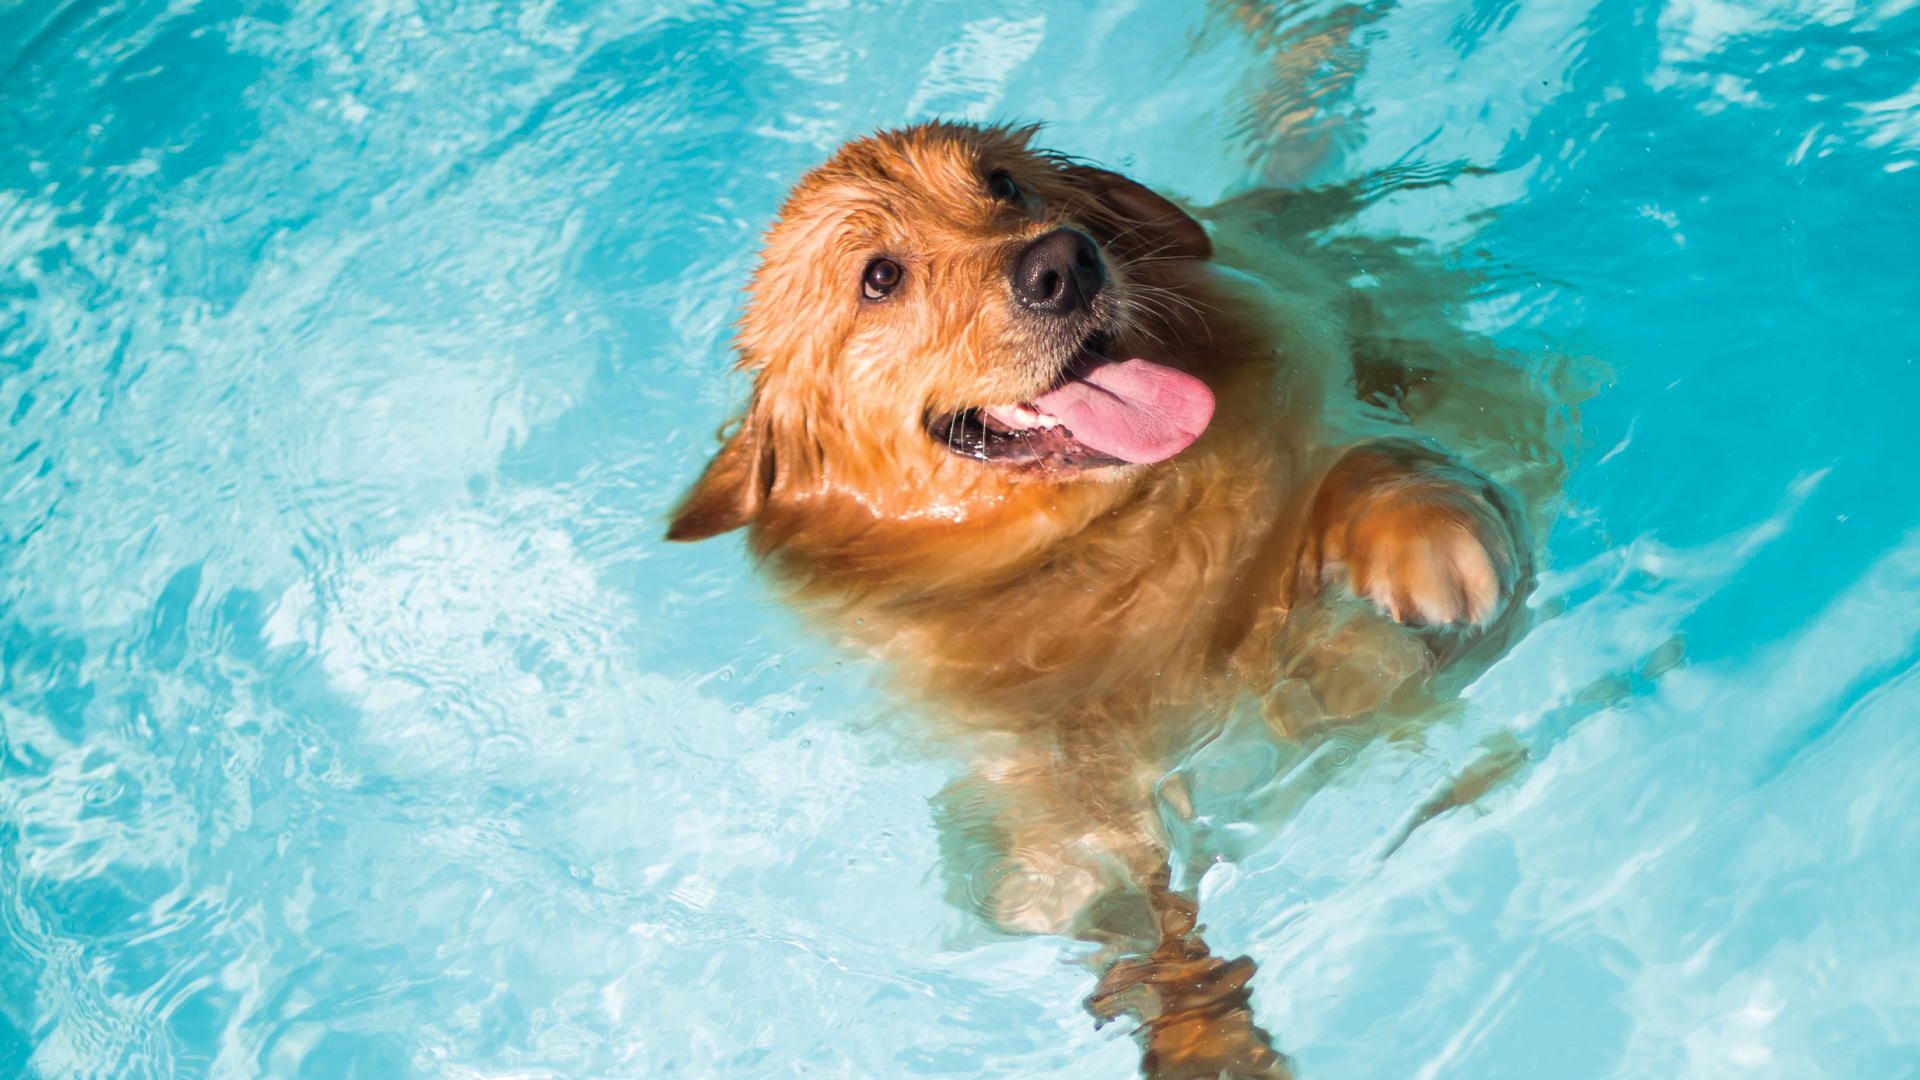 large dog seimming in pool